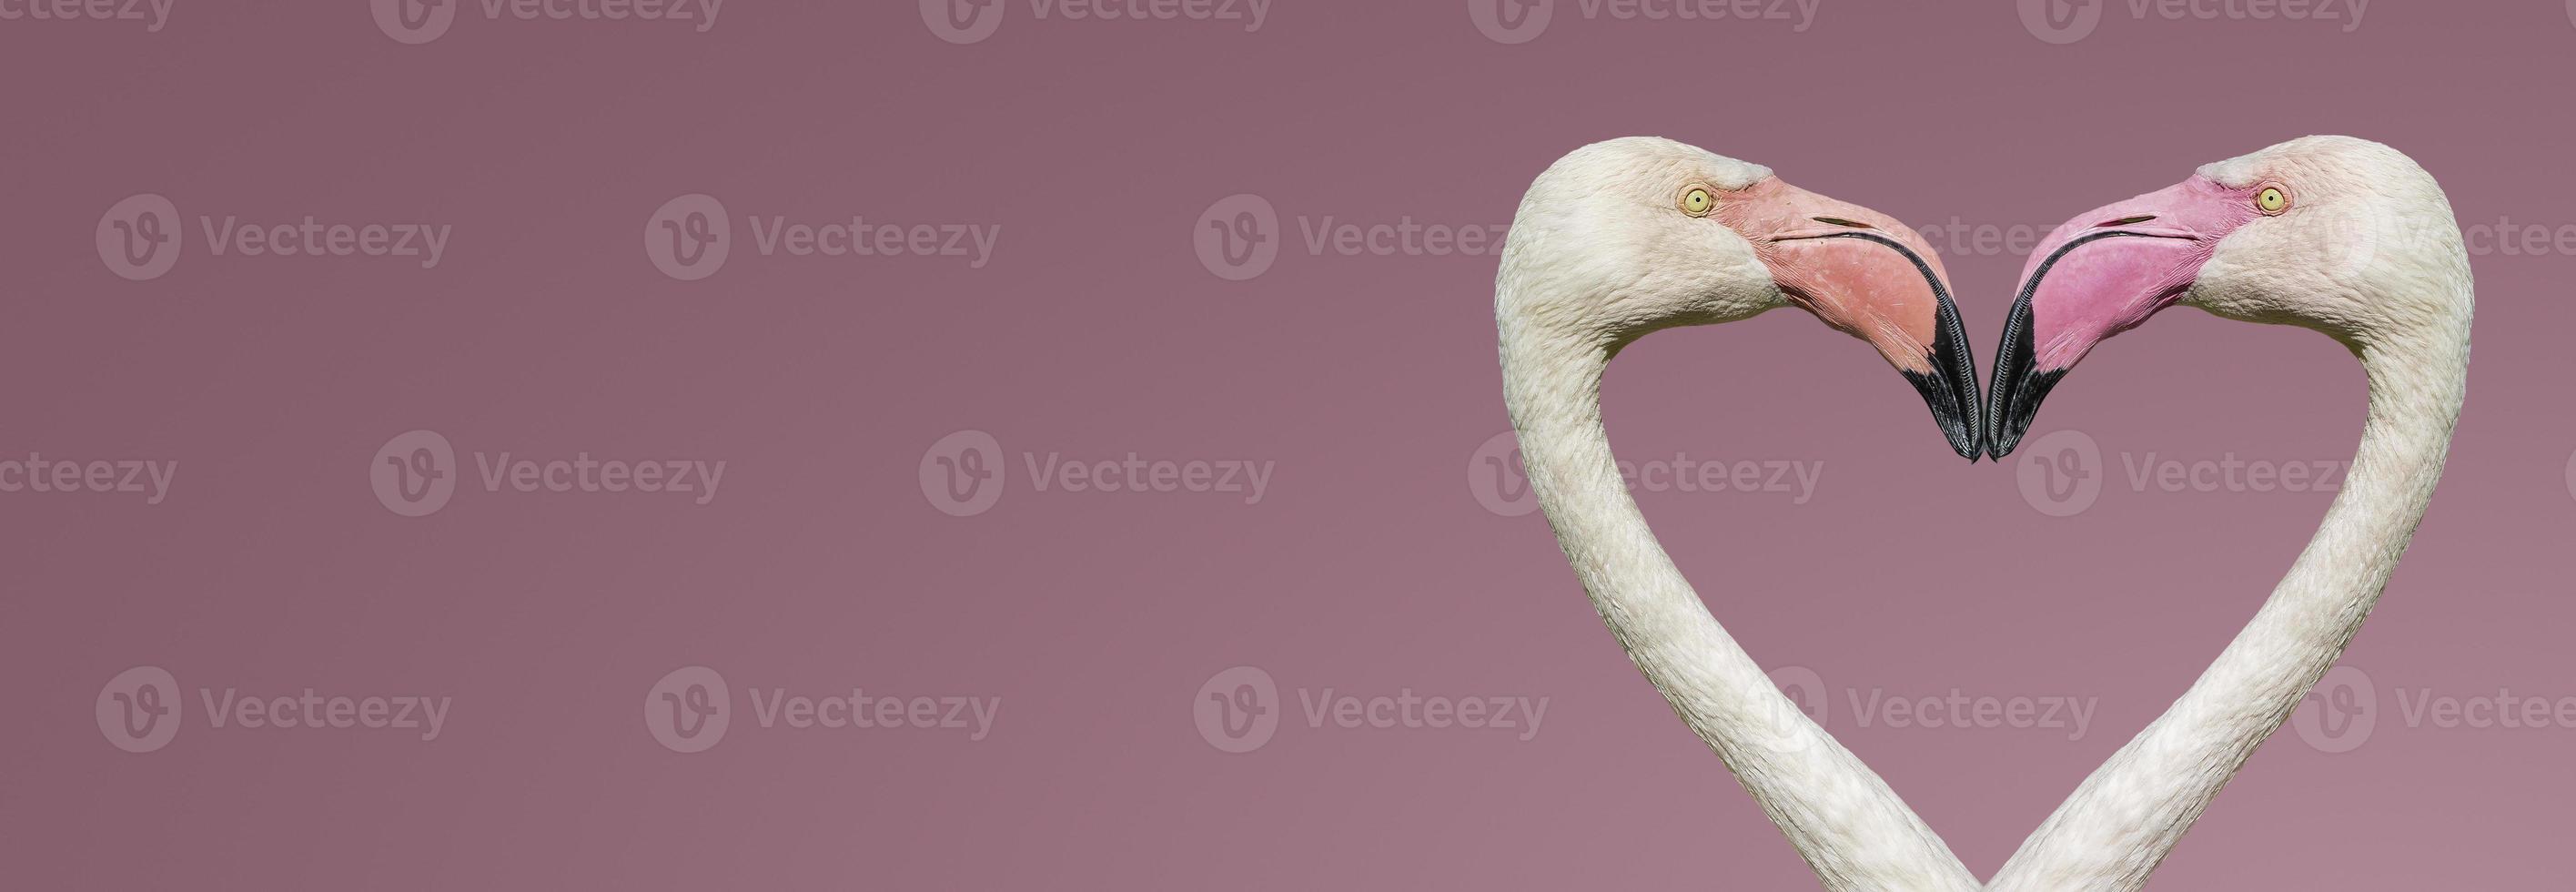 banner met twee roze flamingo's die een hartvorm vormen met hun hoofd en nek geïsoleerd op een gladde lichtroze of roze achtergrond met kopie ruimte voor tekst, close-up, details. liefde en glamour concept foto